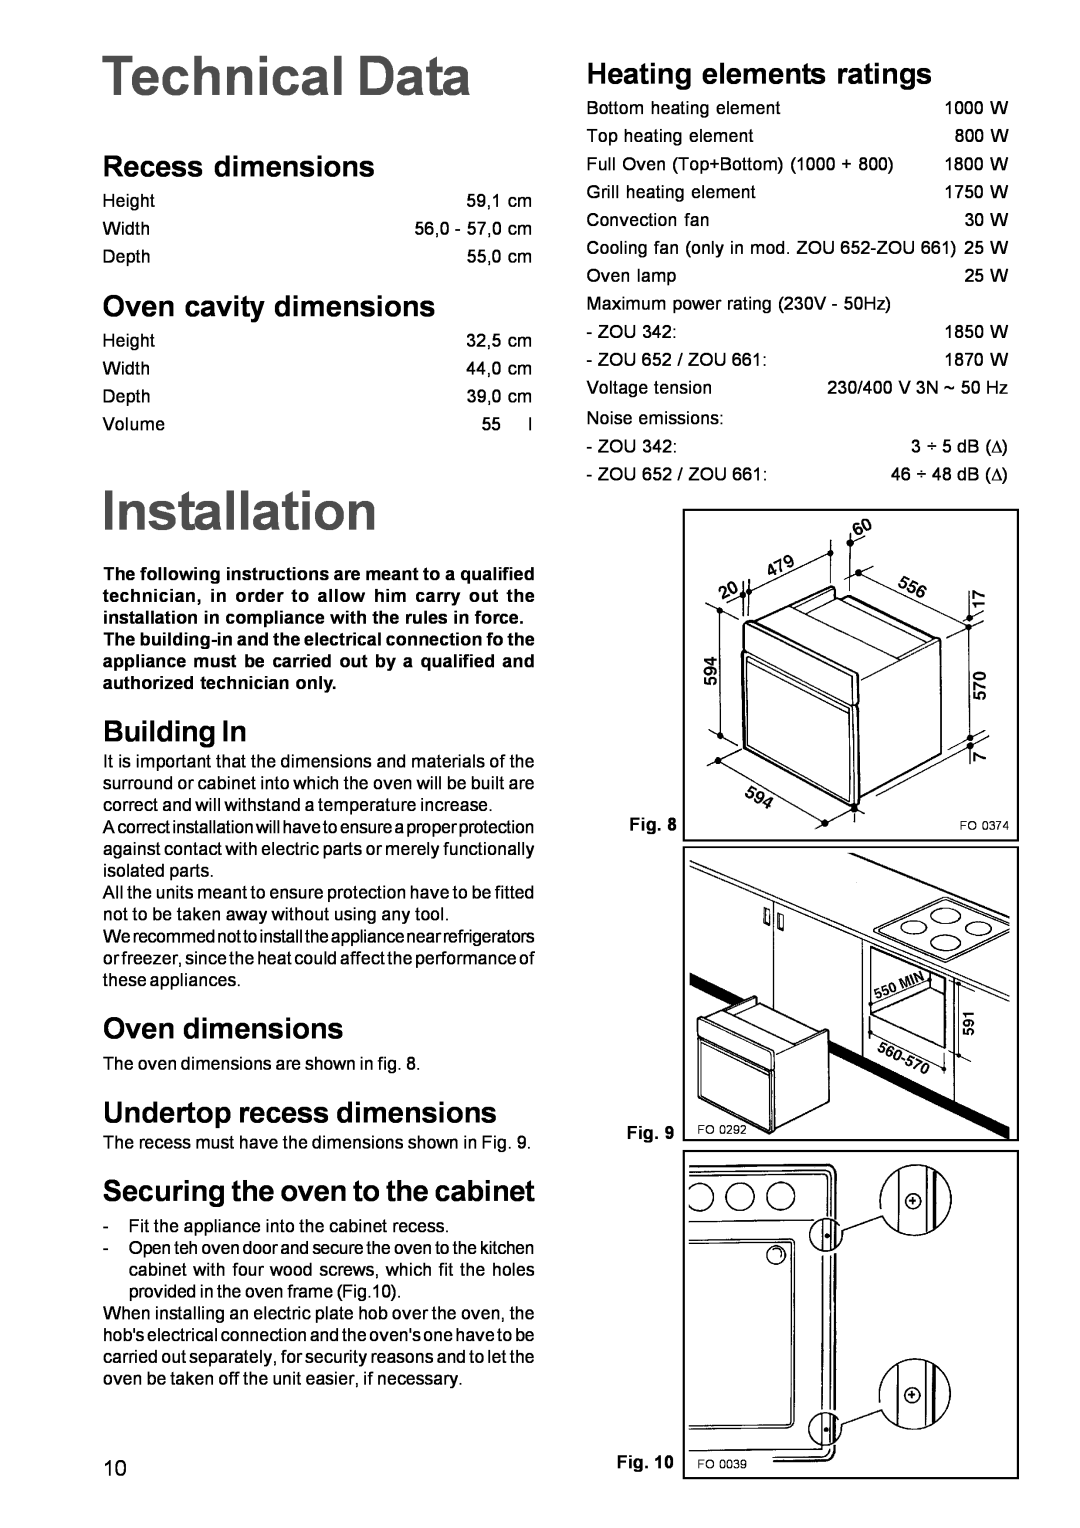 Zanussi ZOU 652 Technical Data, Installation, Recess dimensions, Oven cavity dimensions, Building In, Oven dimensions 